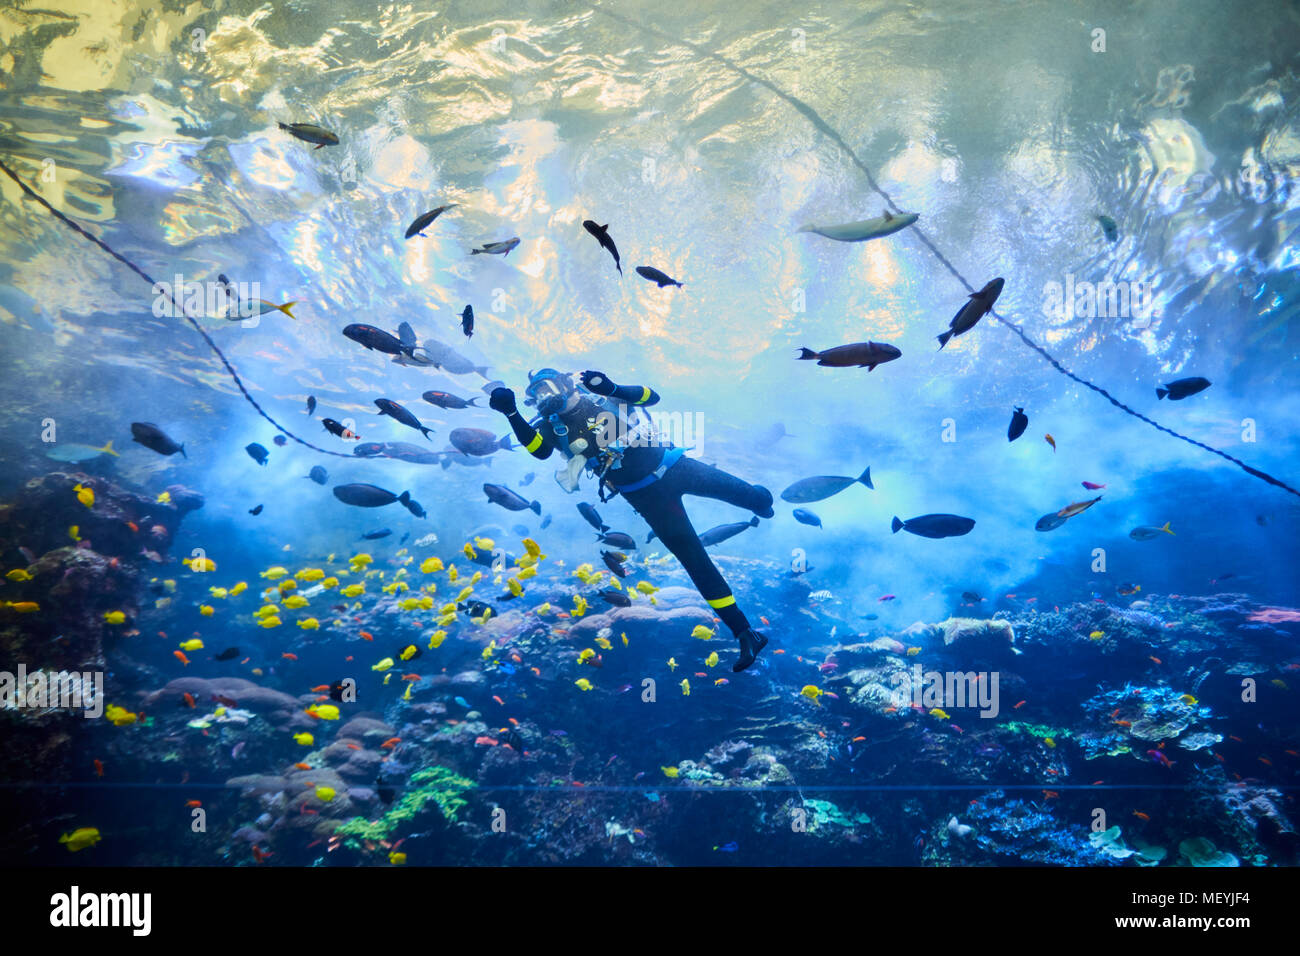 Atlanta capital of the U.S. state of Georgia, The Georgia Aquarium interior a diver inside the large tanks Stock Photo